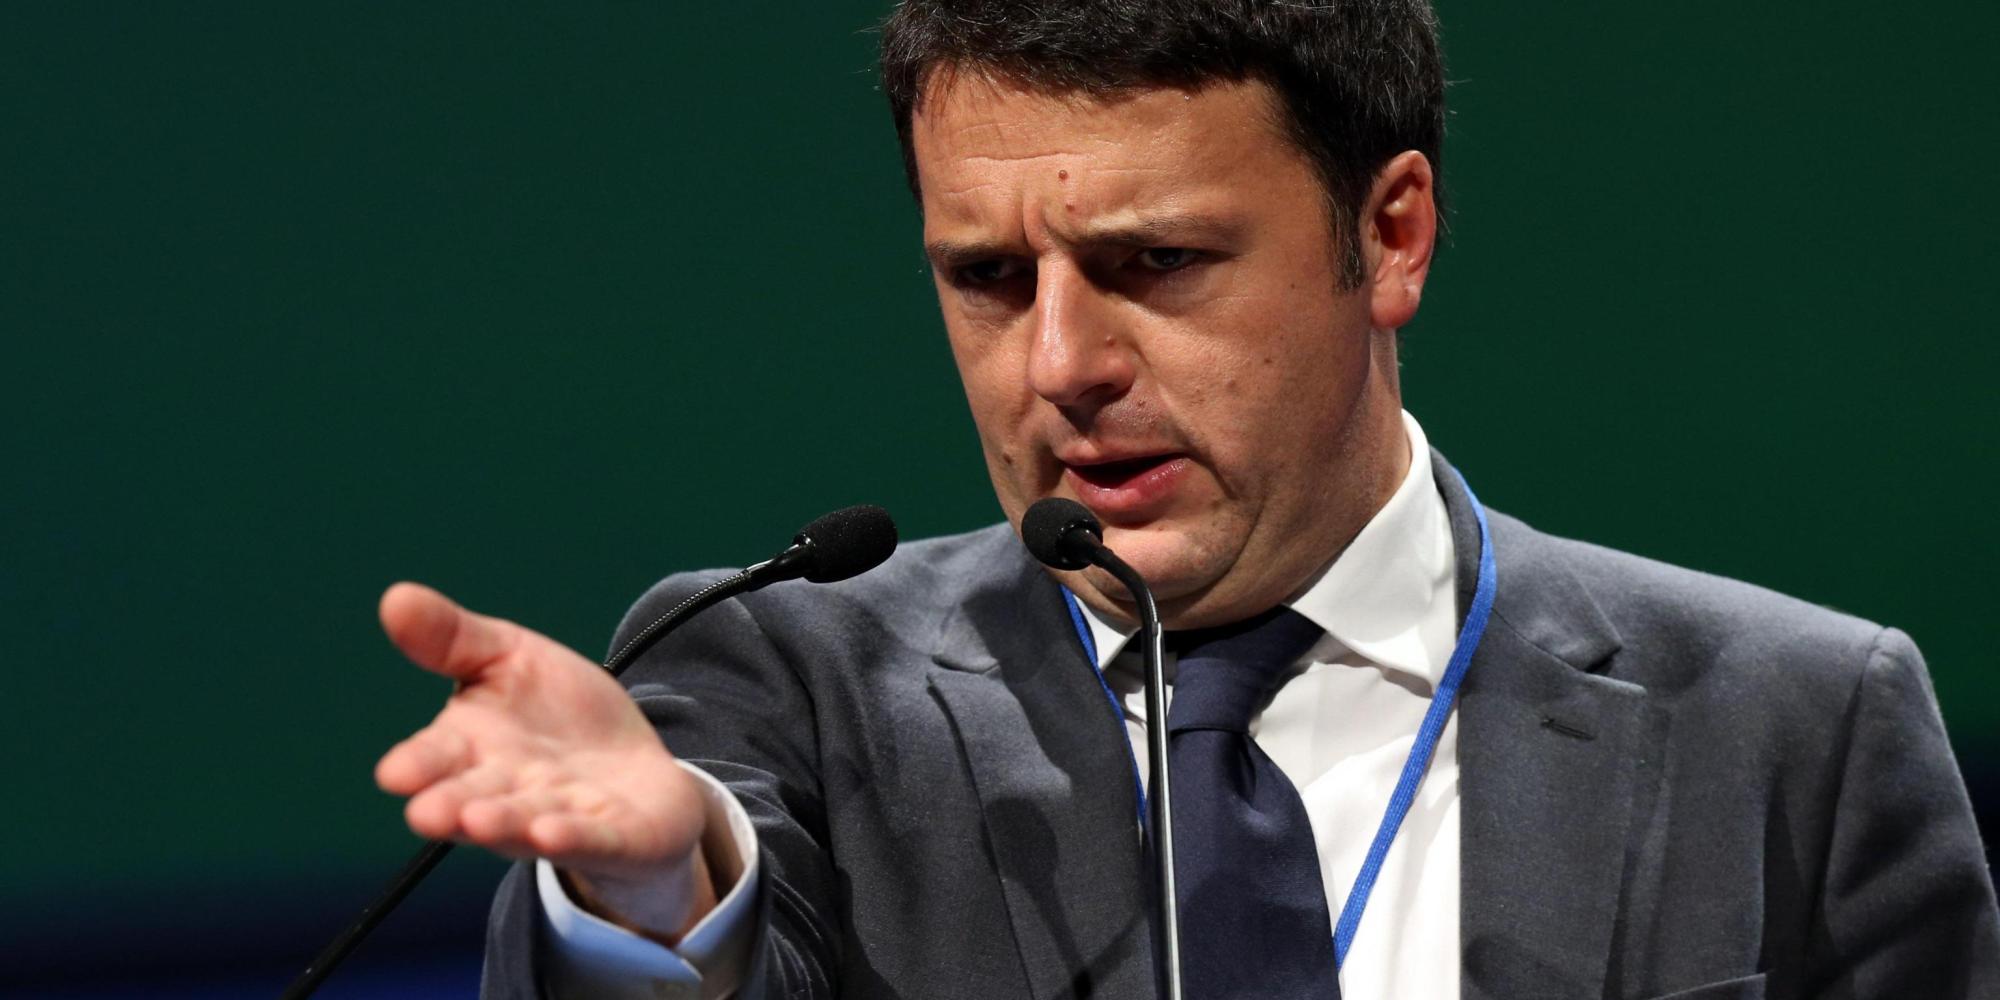 Legge di Stabilita’, Renzi sfida la Ue: “Bruxelles non e’ il nostro maestro se boccia la manovra glie la rimandiamo tale e quale”.